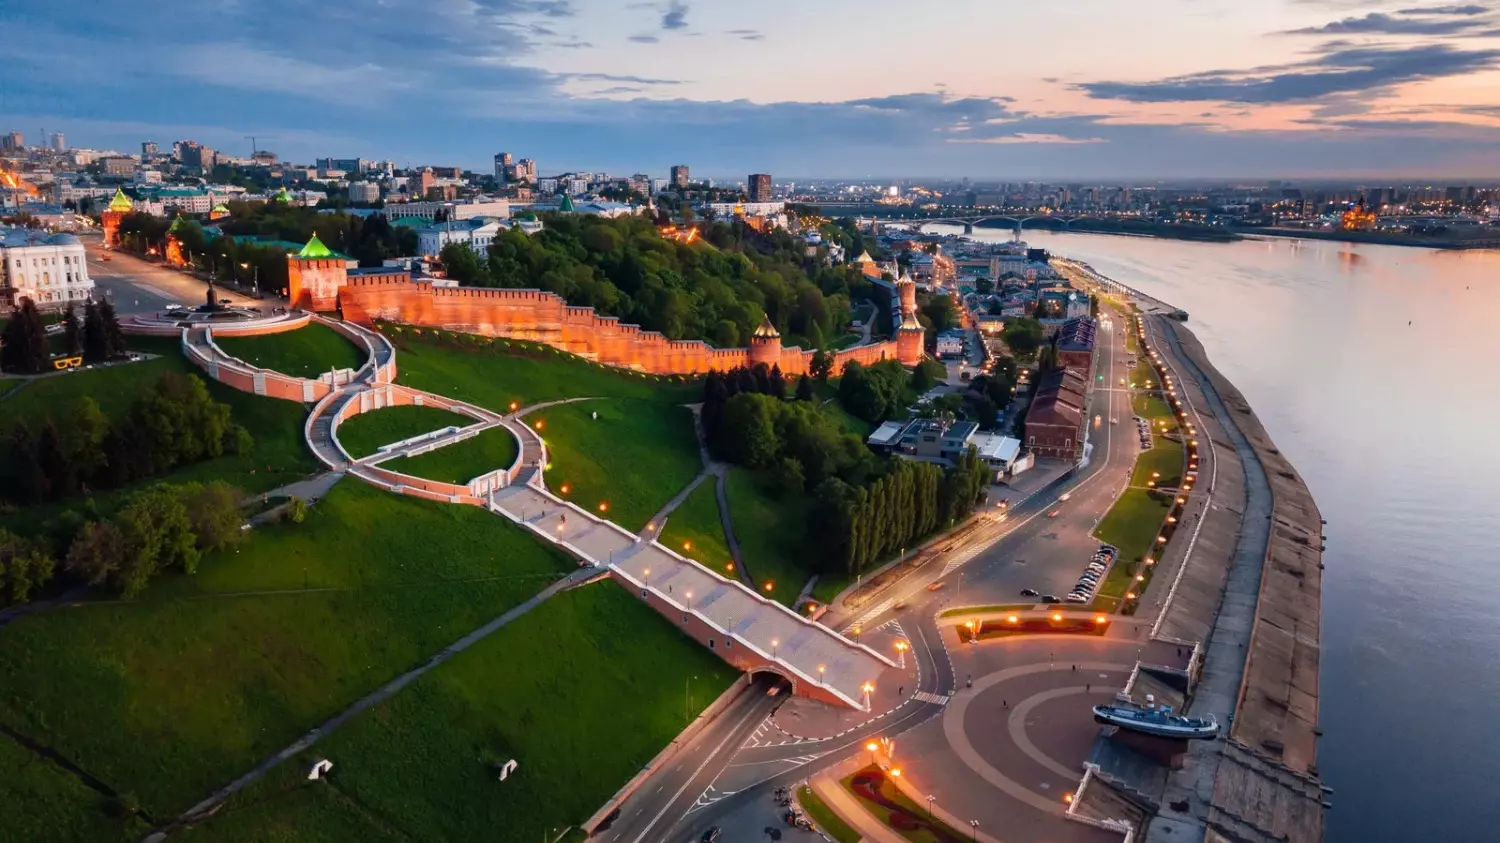 Нижний Новгород сохранил до наших дней множество памятников архитектуры разных столетий